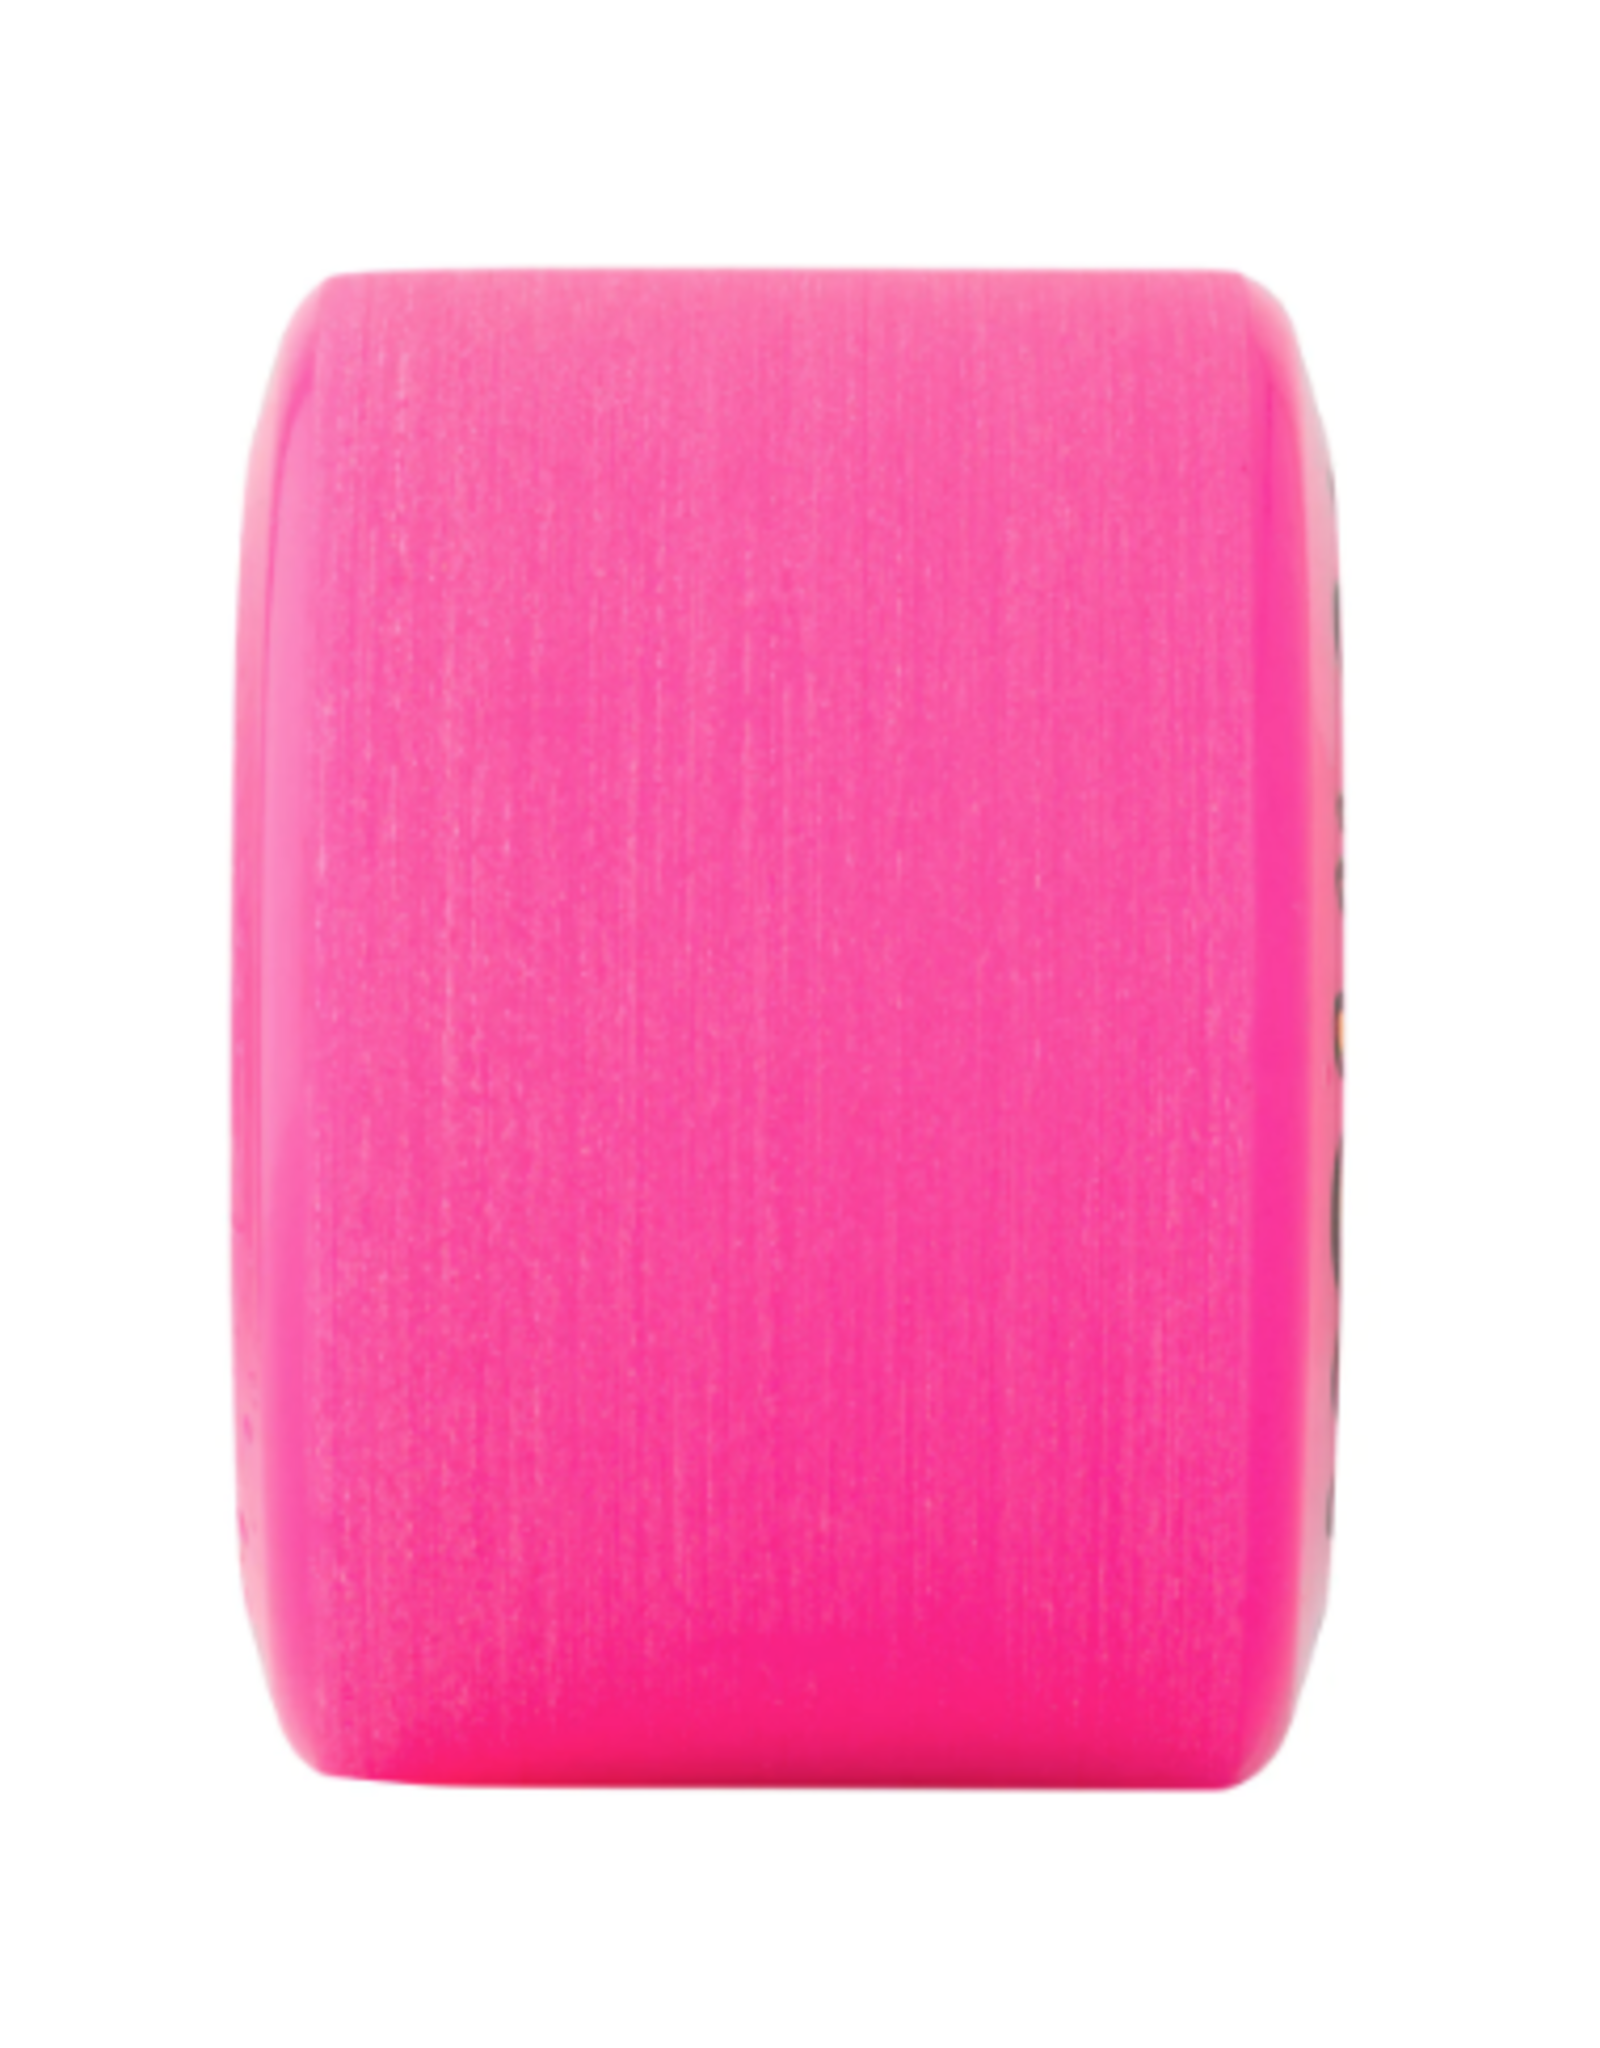 SLIMEBALLS 66mm OG Slime Pink 78a Slime Balls Skateboard Wheels